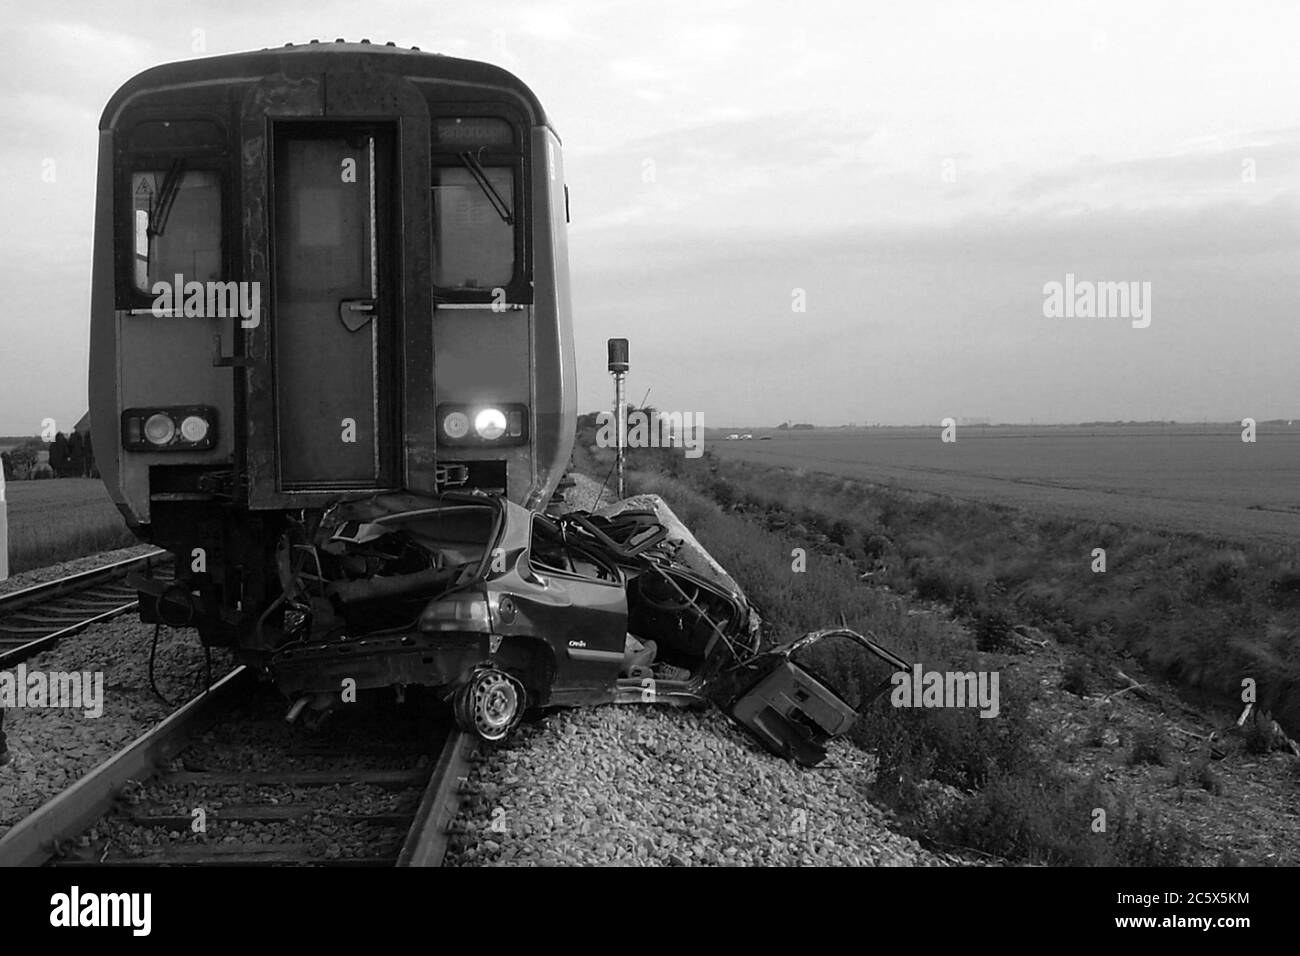 accident de voiture dans le train, suicide Banque D'Images